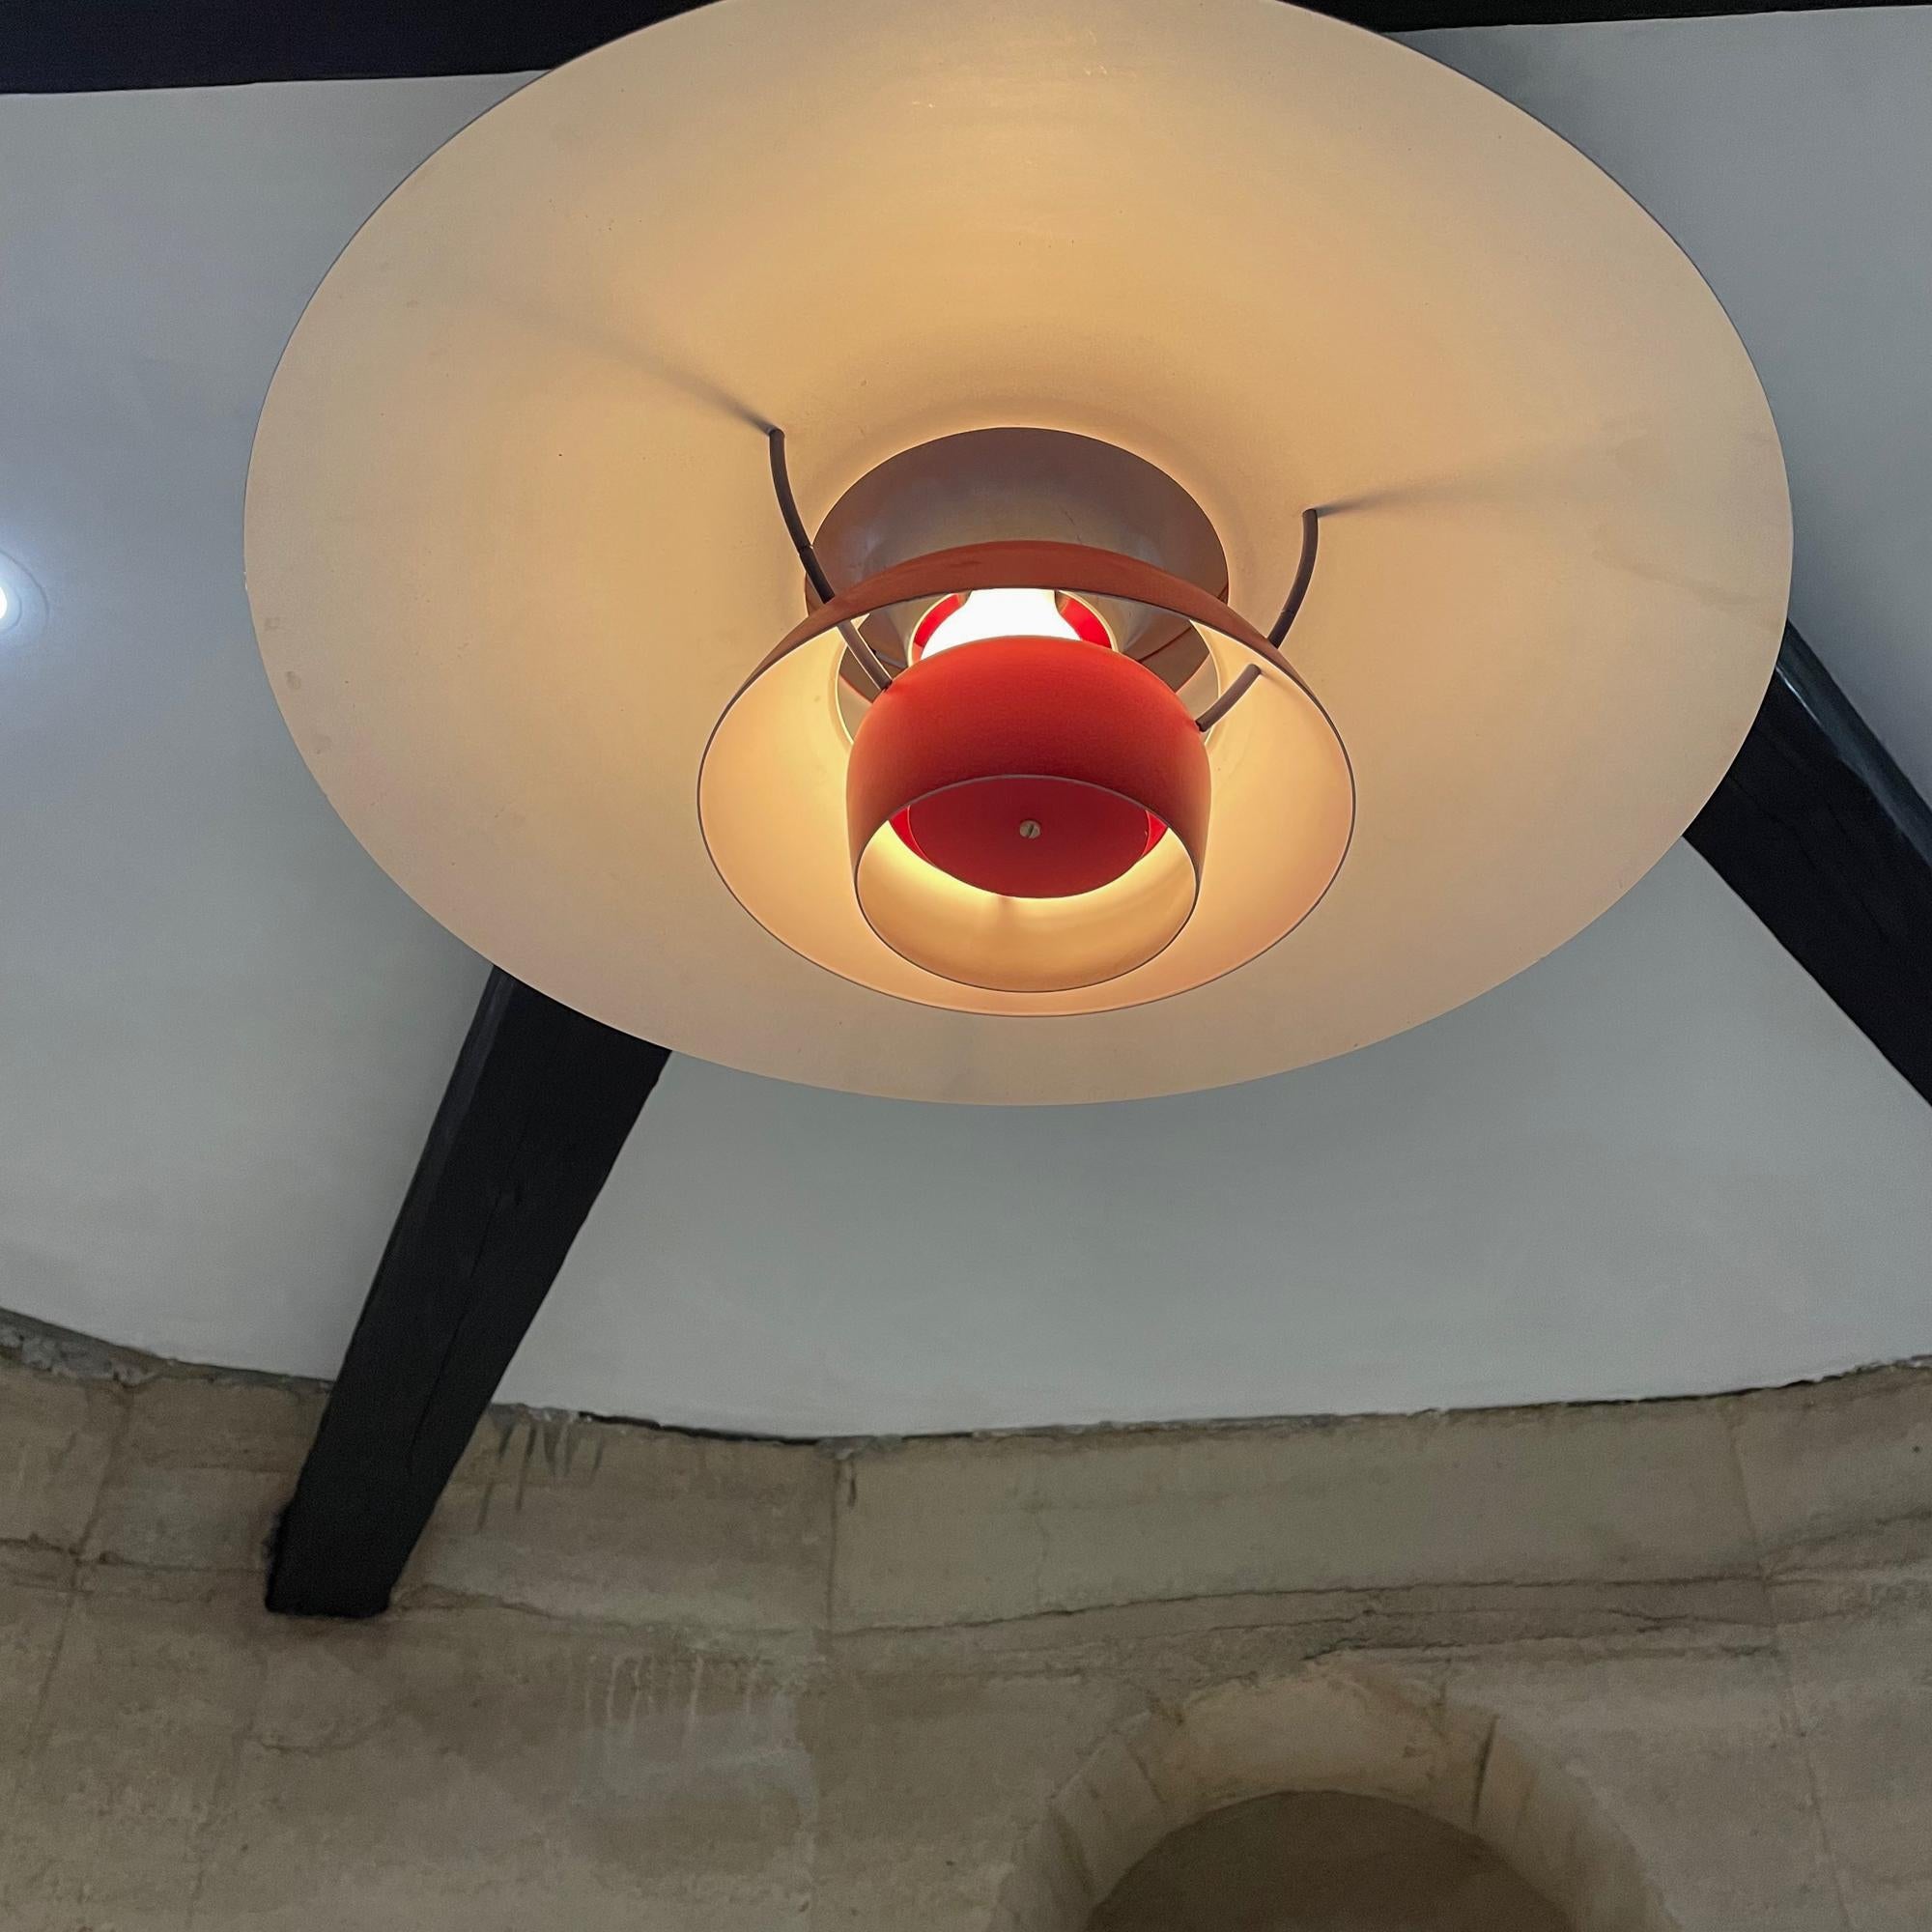 Mid-20th Century Poul Henningsen Red Lamp Iconic PH5 Pendant Light Louis Poulsen, Denmark, 1958